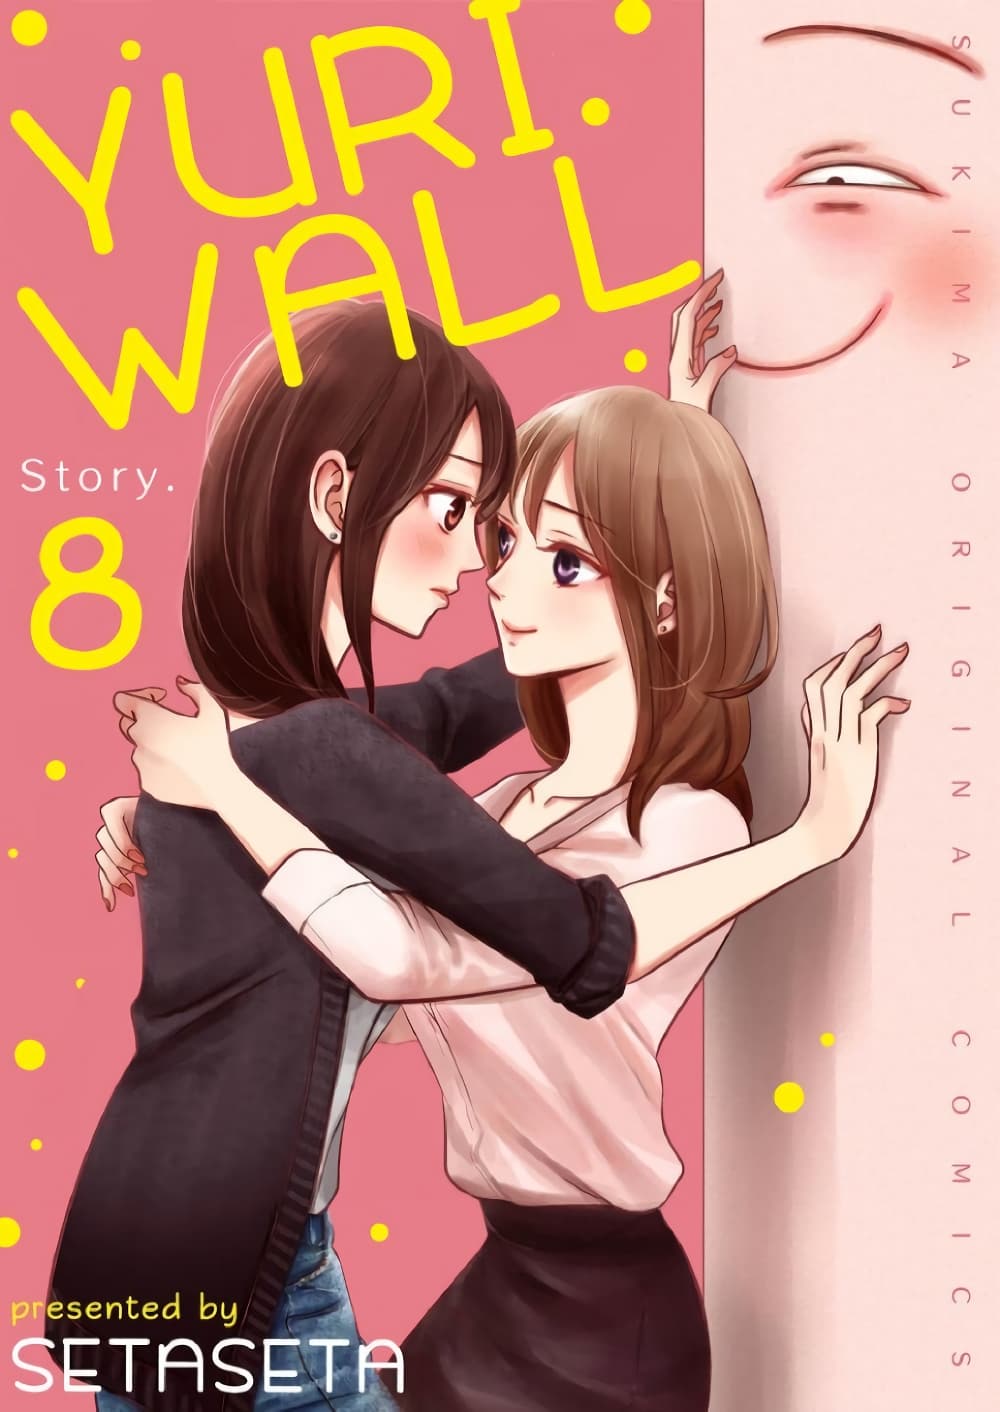 Yuri Wall 8 (1)